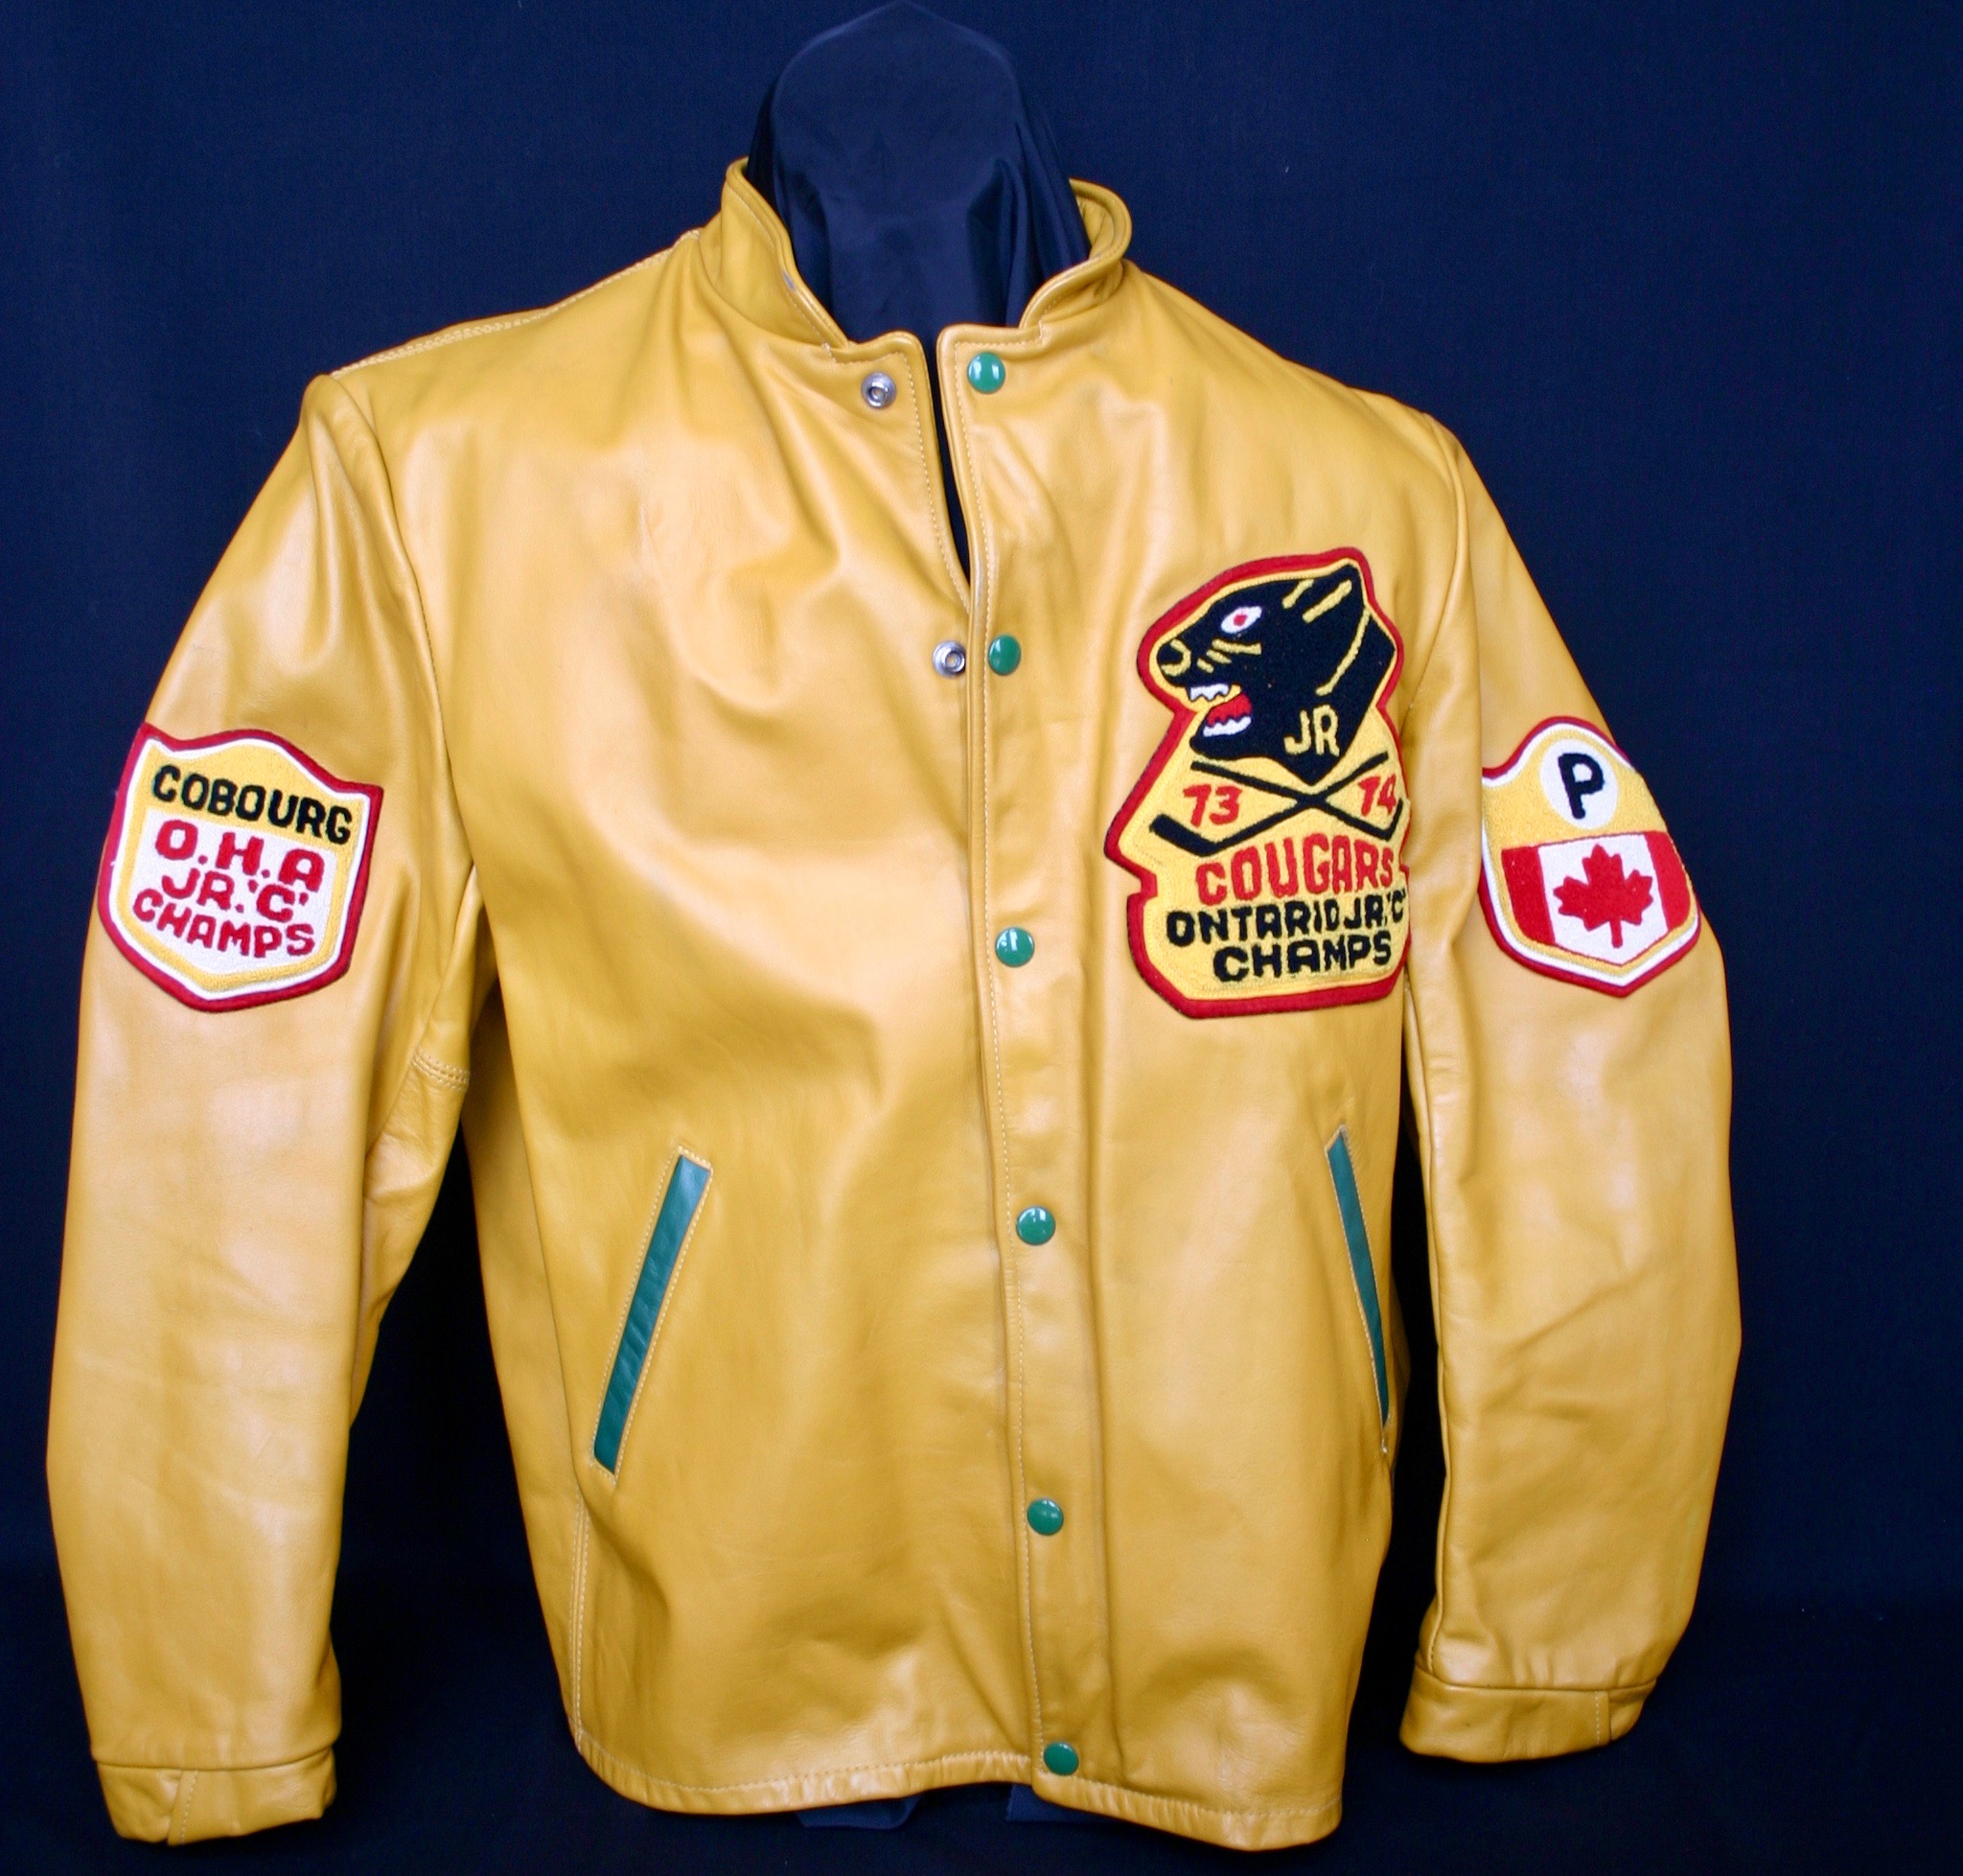 Cobourg Cougar jacket